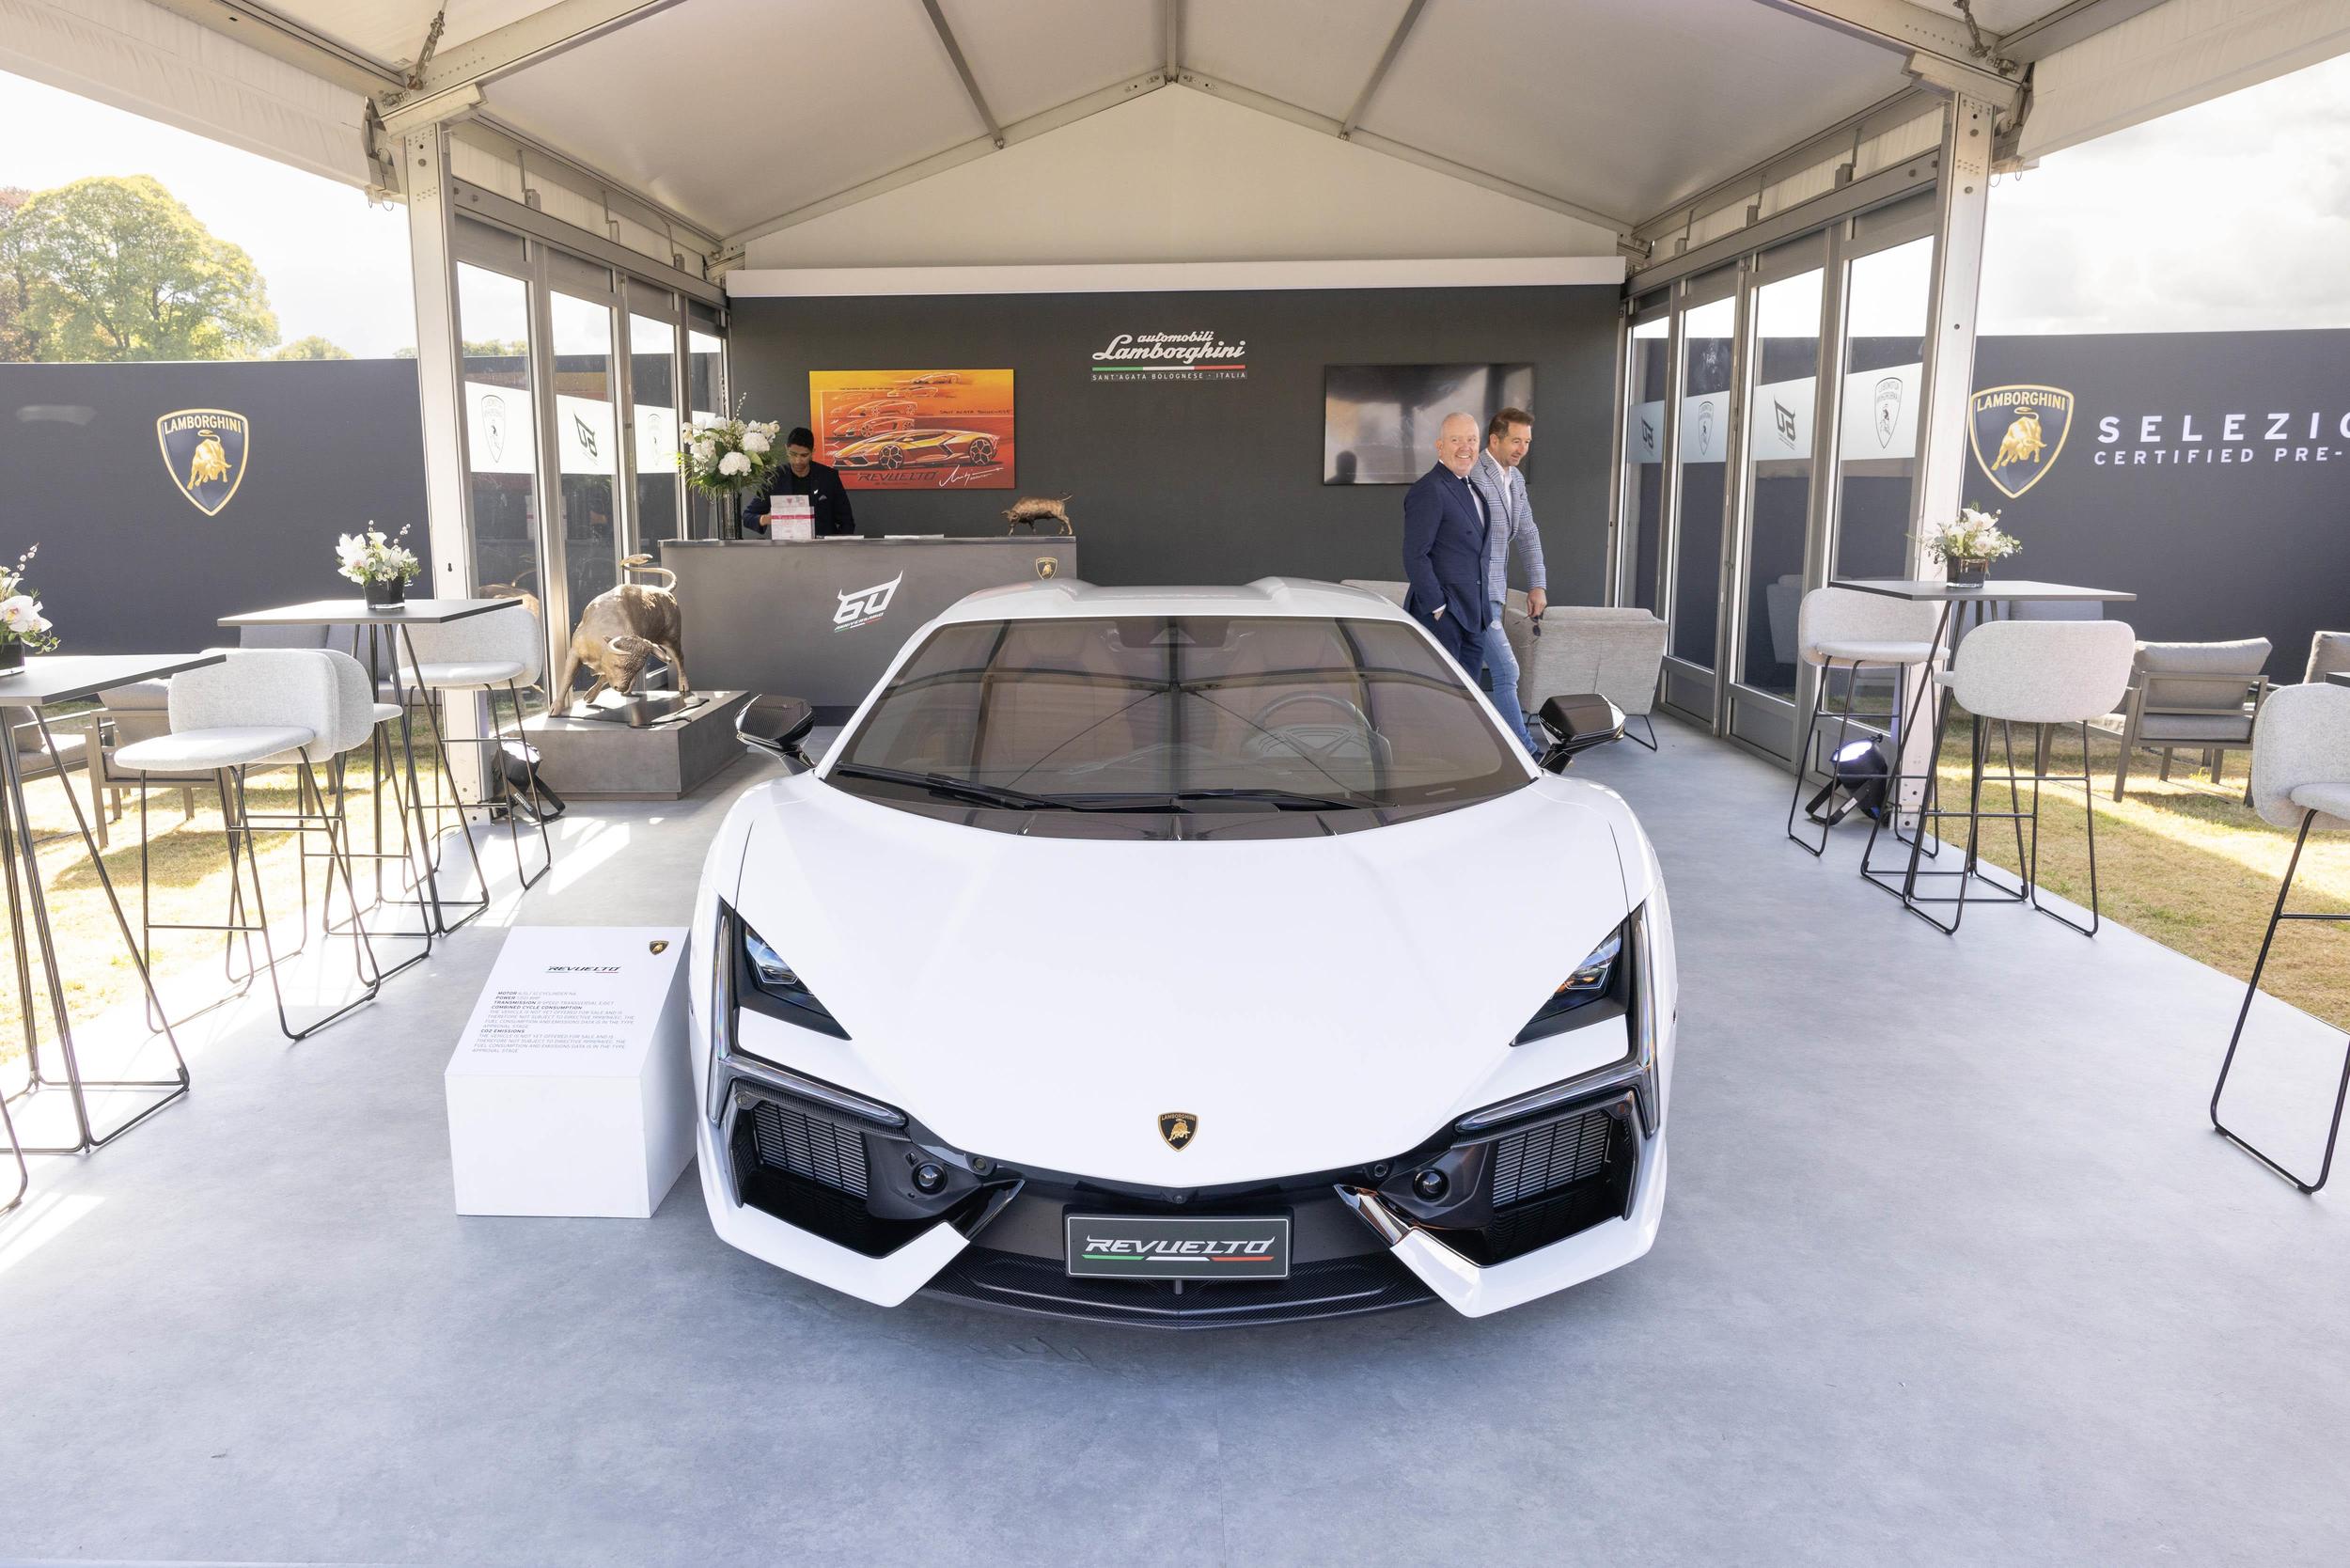 Lamborghini luxury